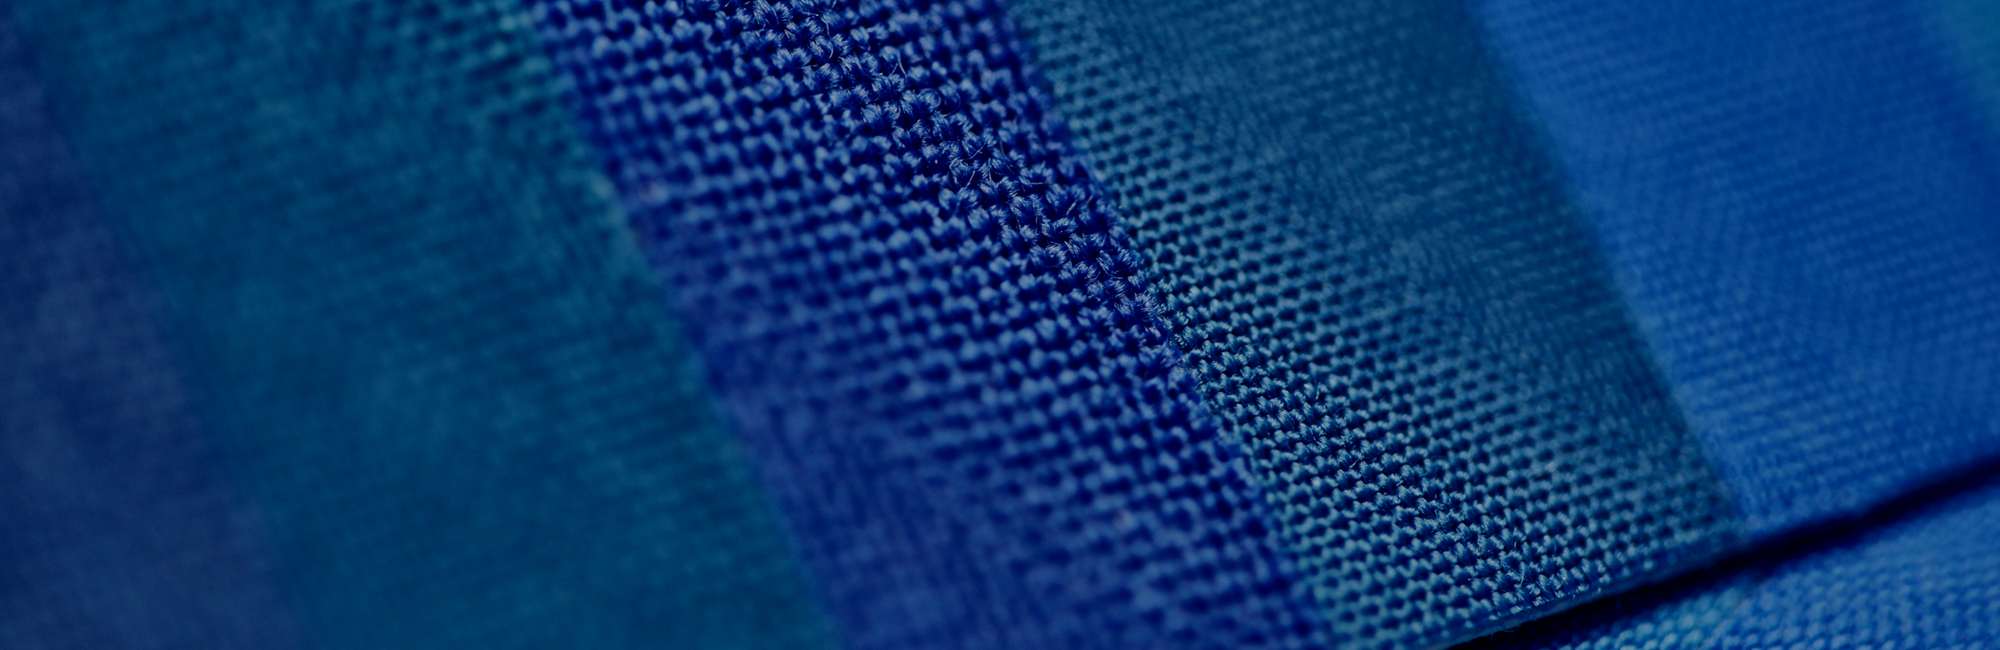 James Heal - Blue Wool test materials